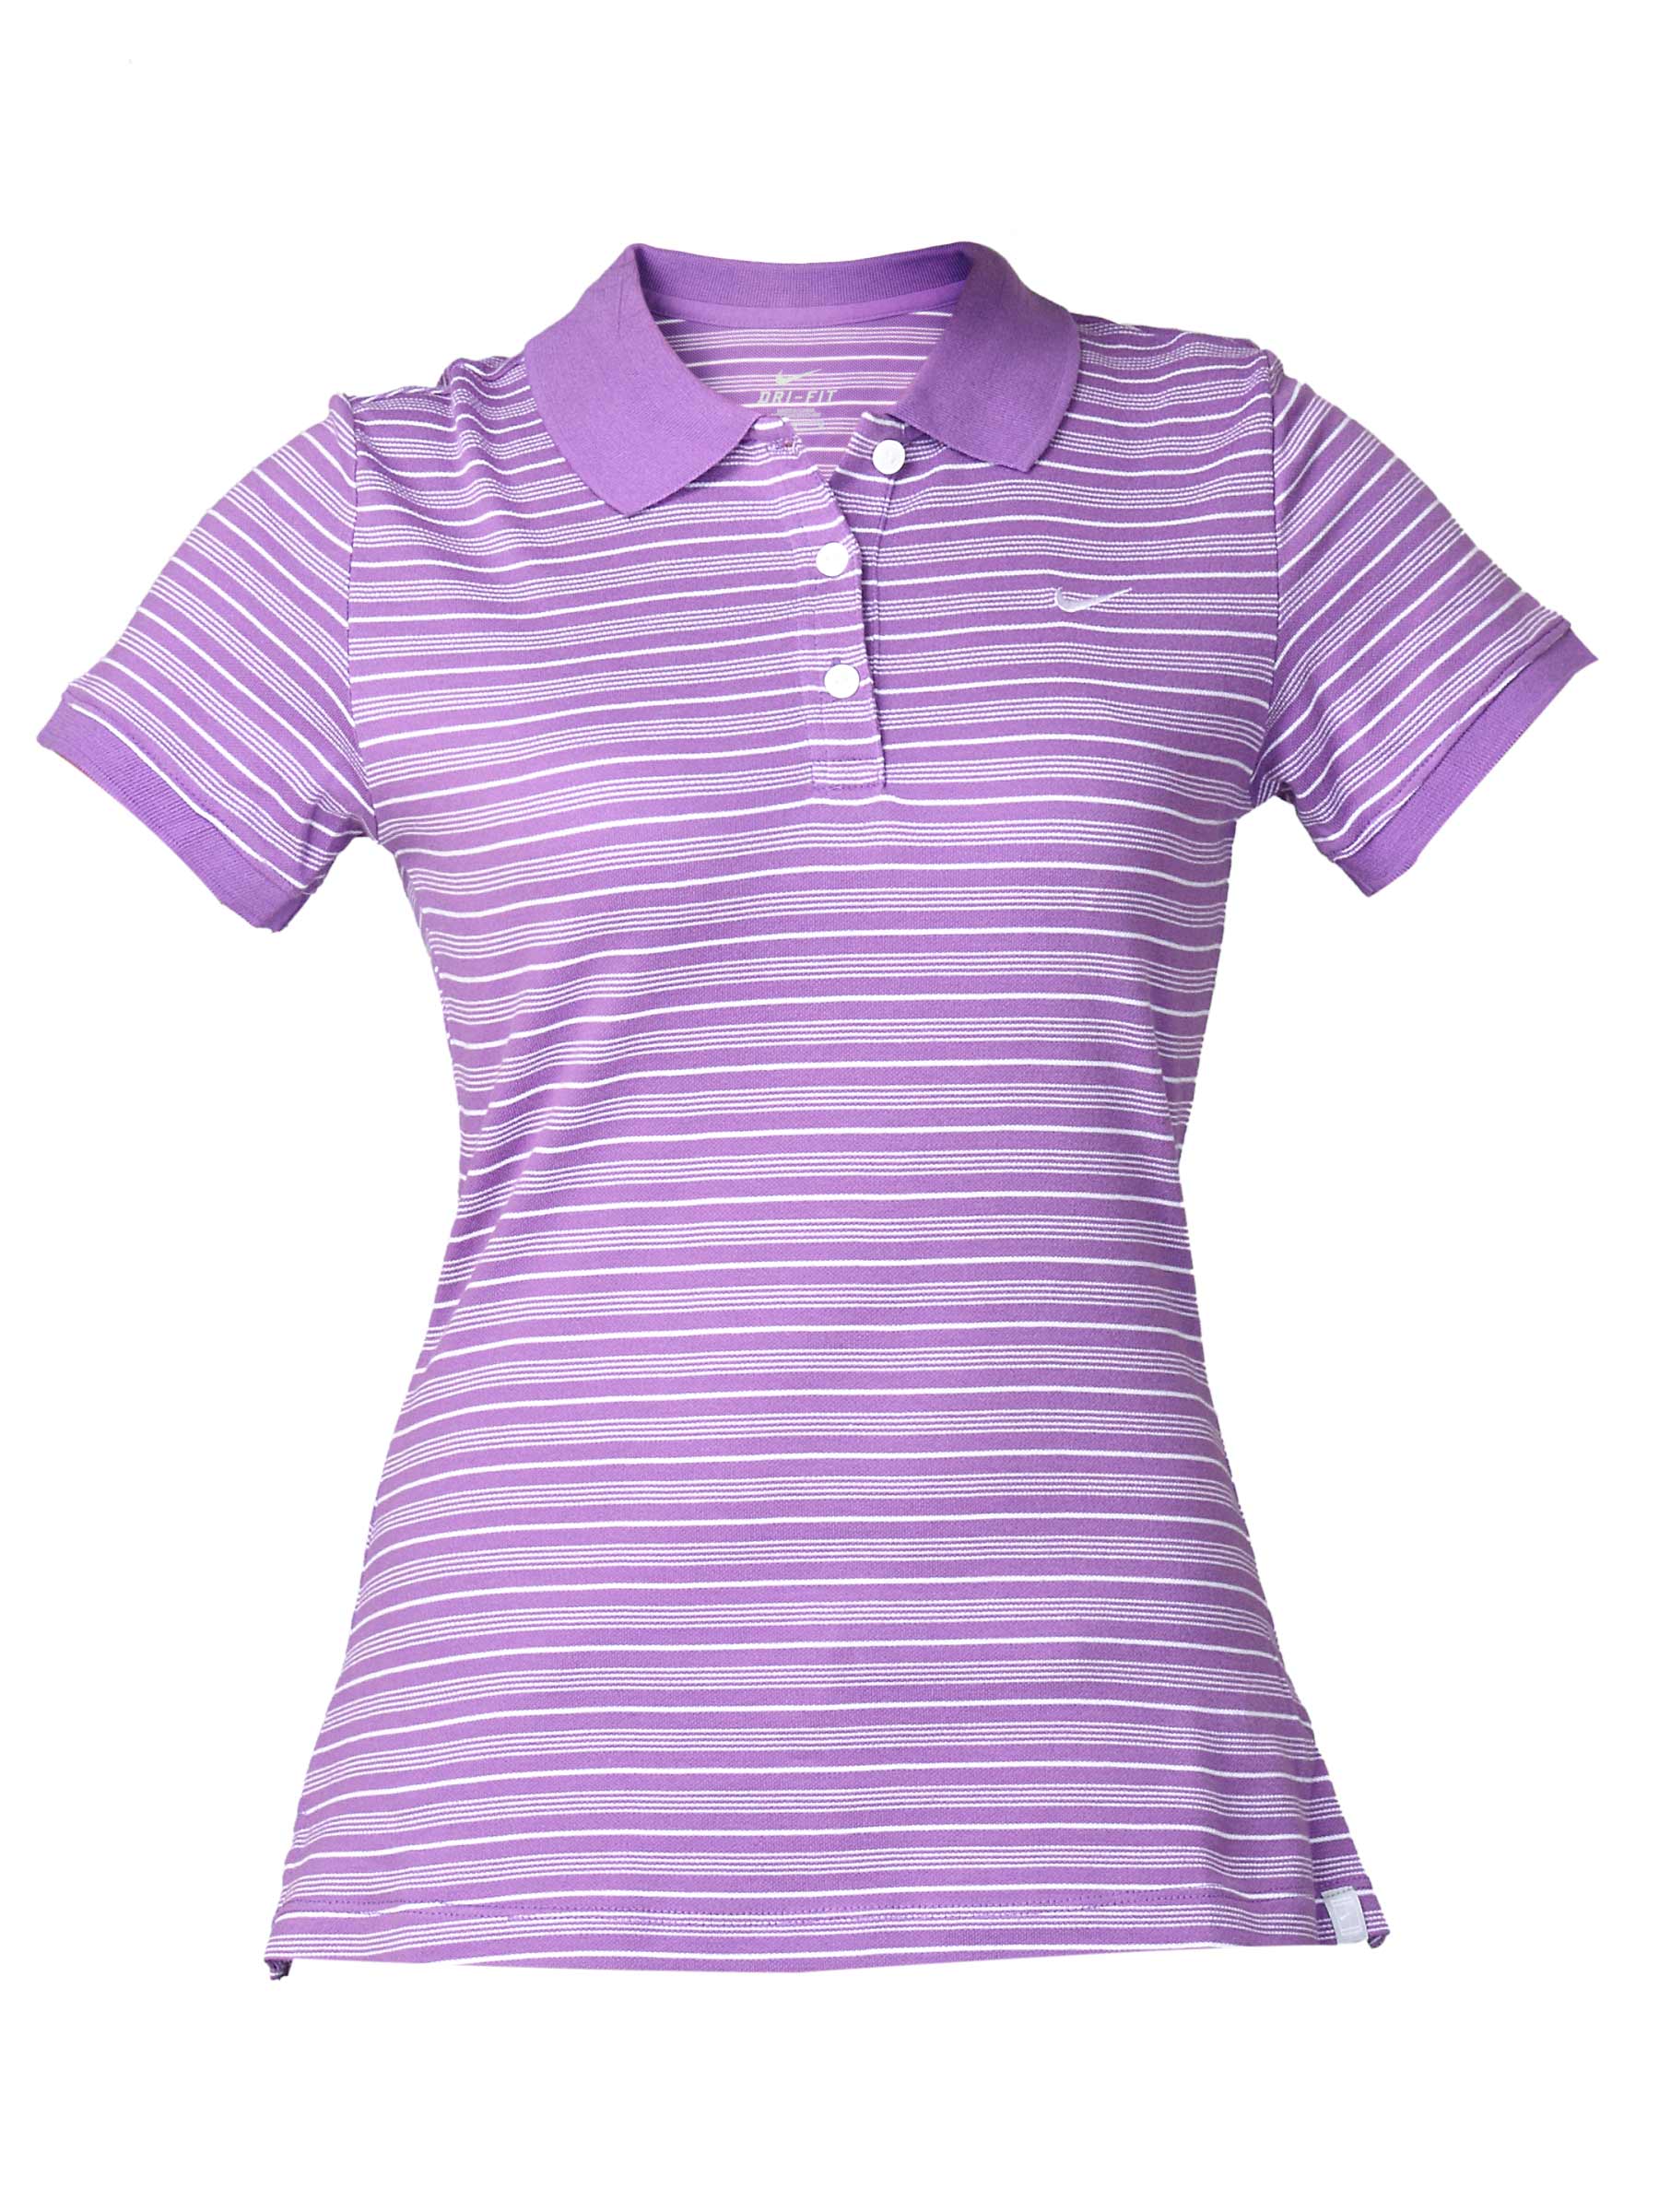 Nike Women's Purple Polo T-shirt